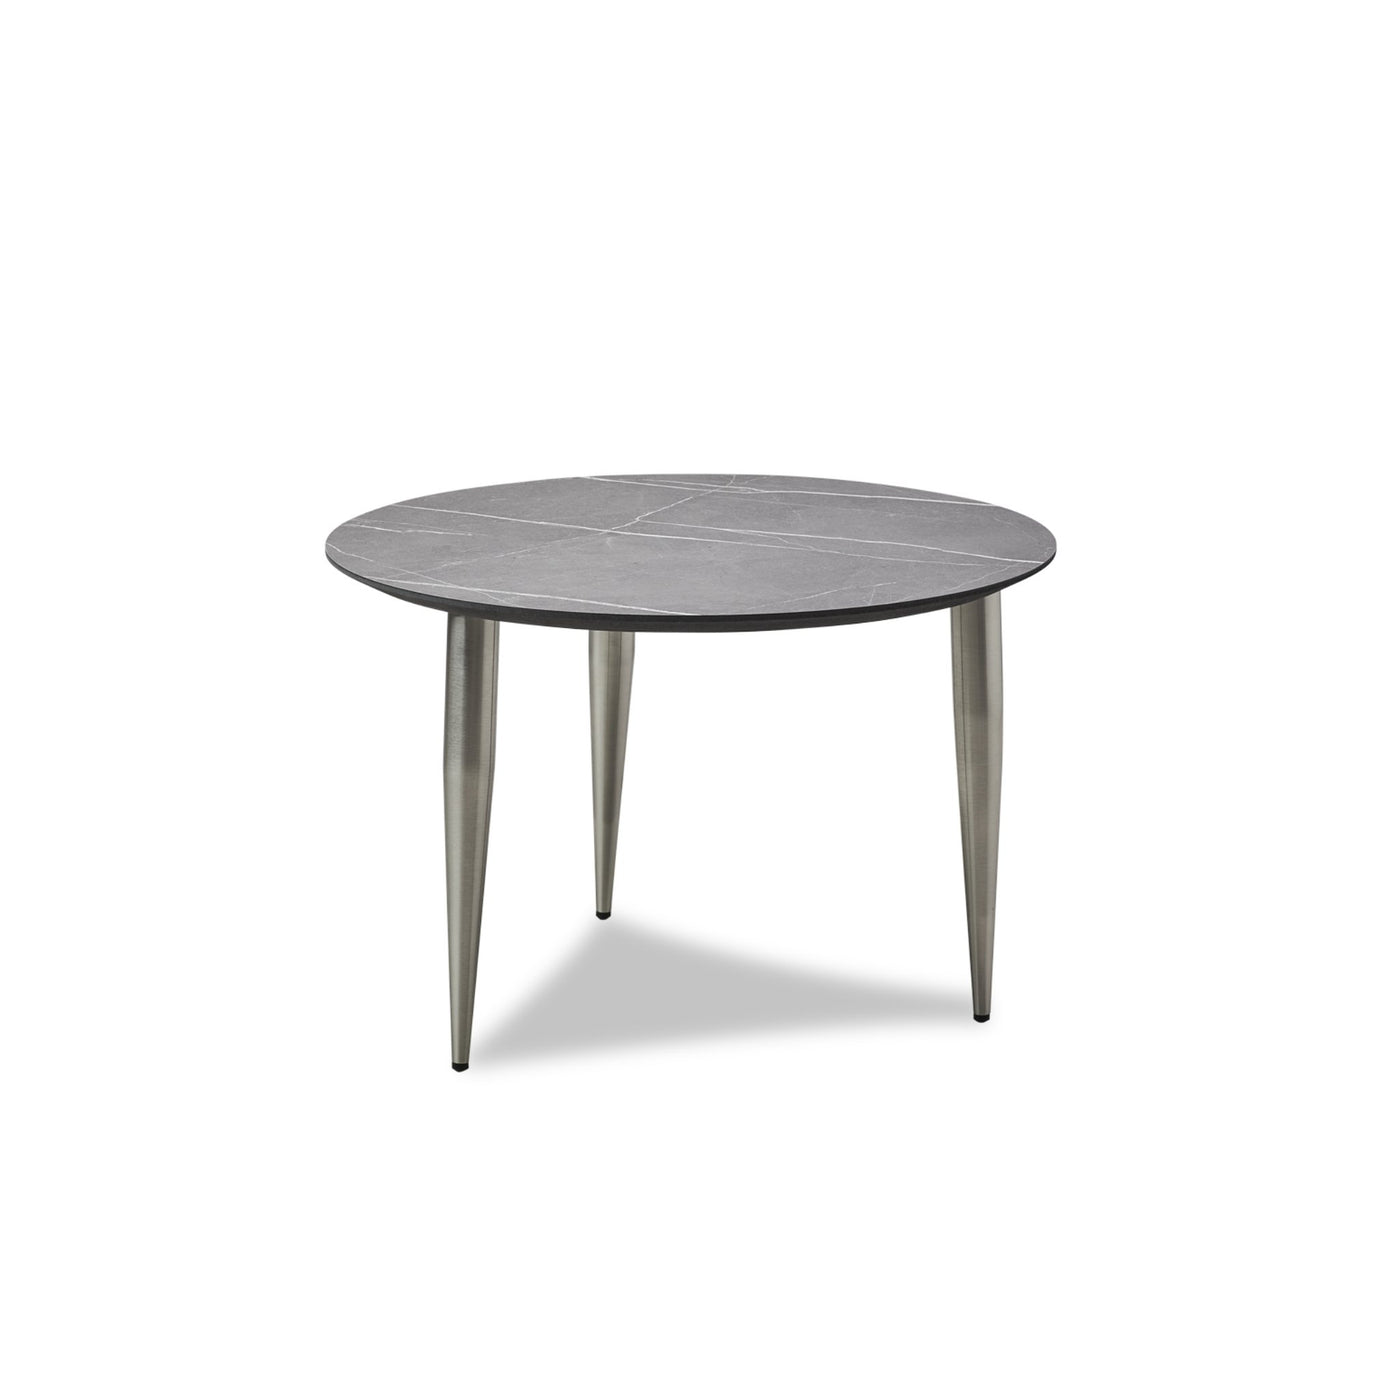 Produktbillede af Katrine sofabord fra Thomsen Furniture, der har stålben og en overflade i marmorlook.